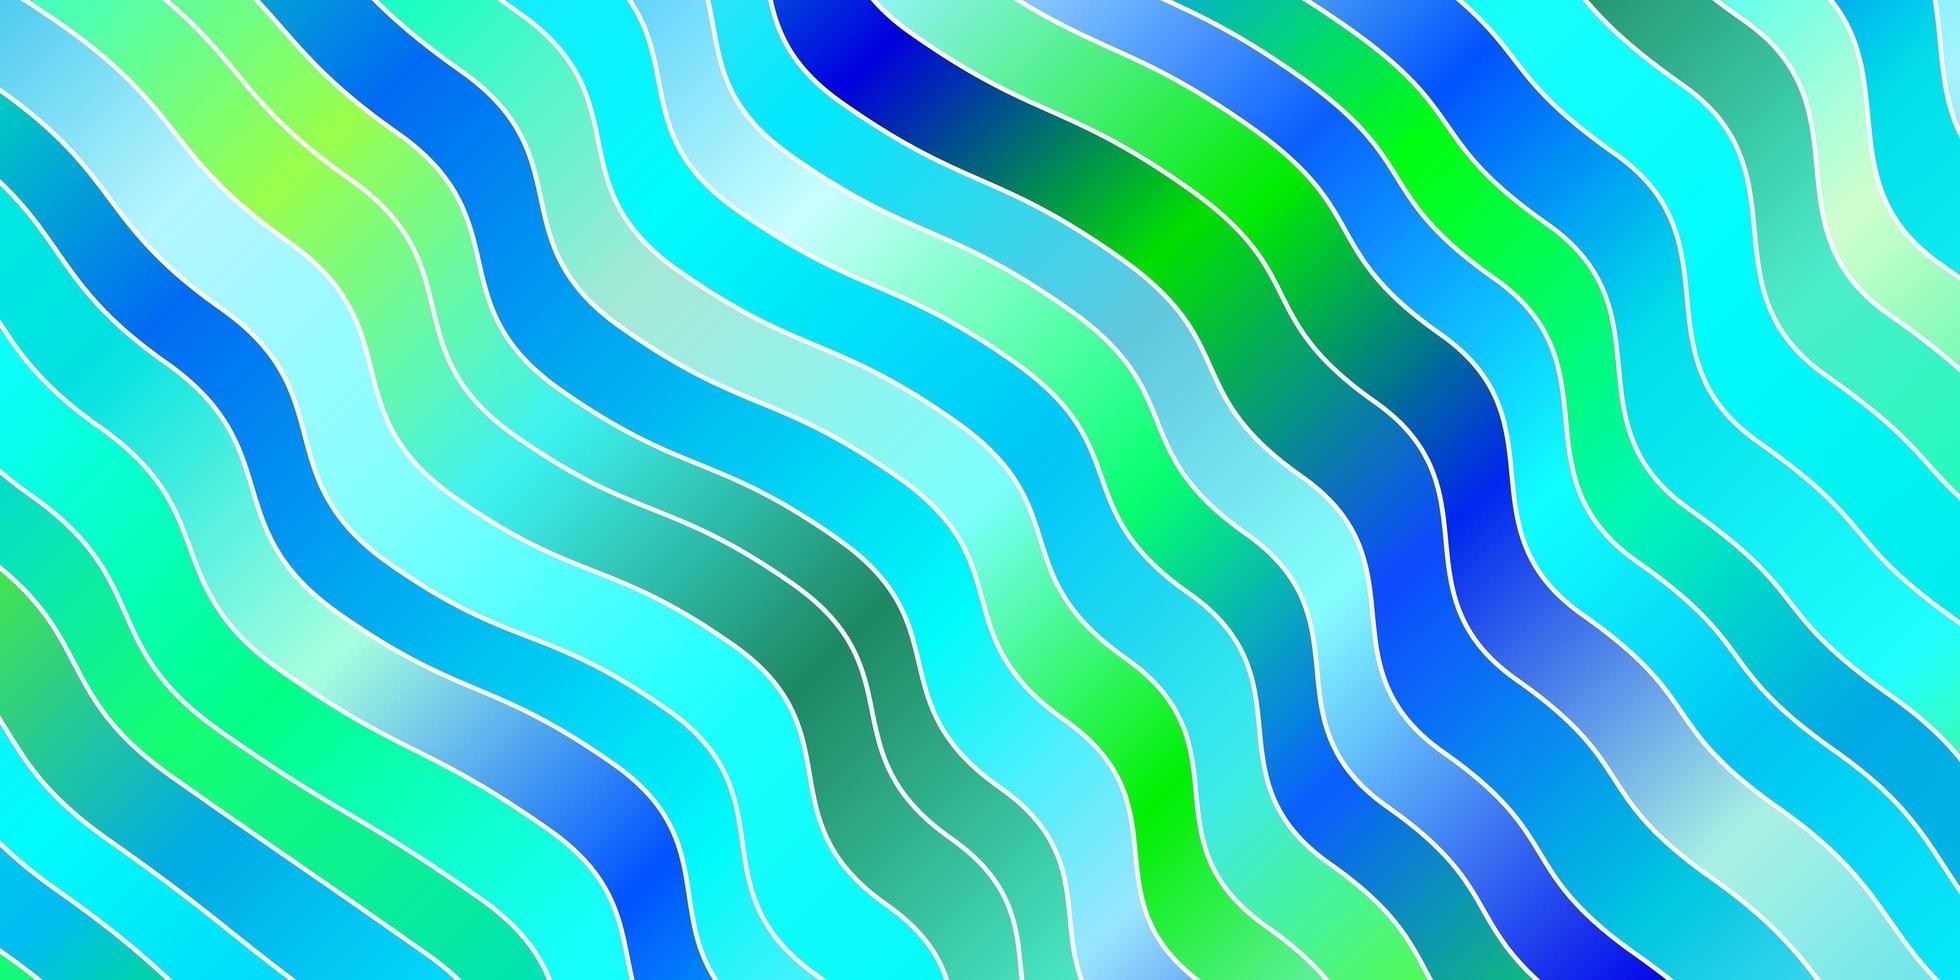 fundo vector azul, verde claro com linhas. ilustração abstrata colorida com curvas de gradiente. design para a promoção de seus negócios.